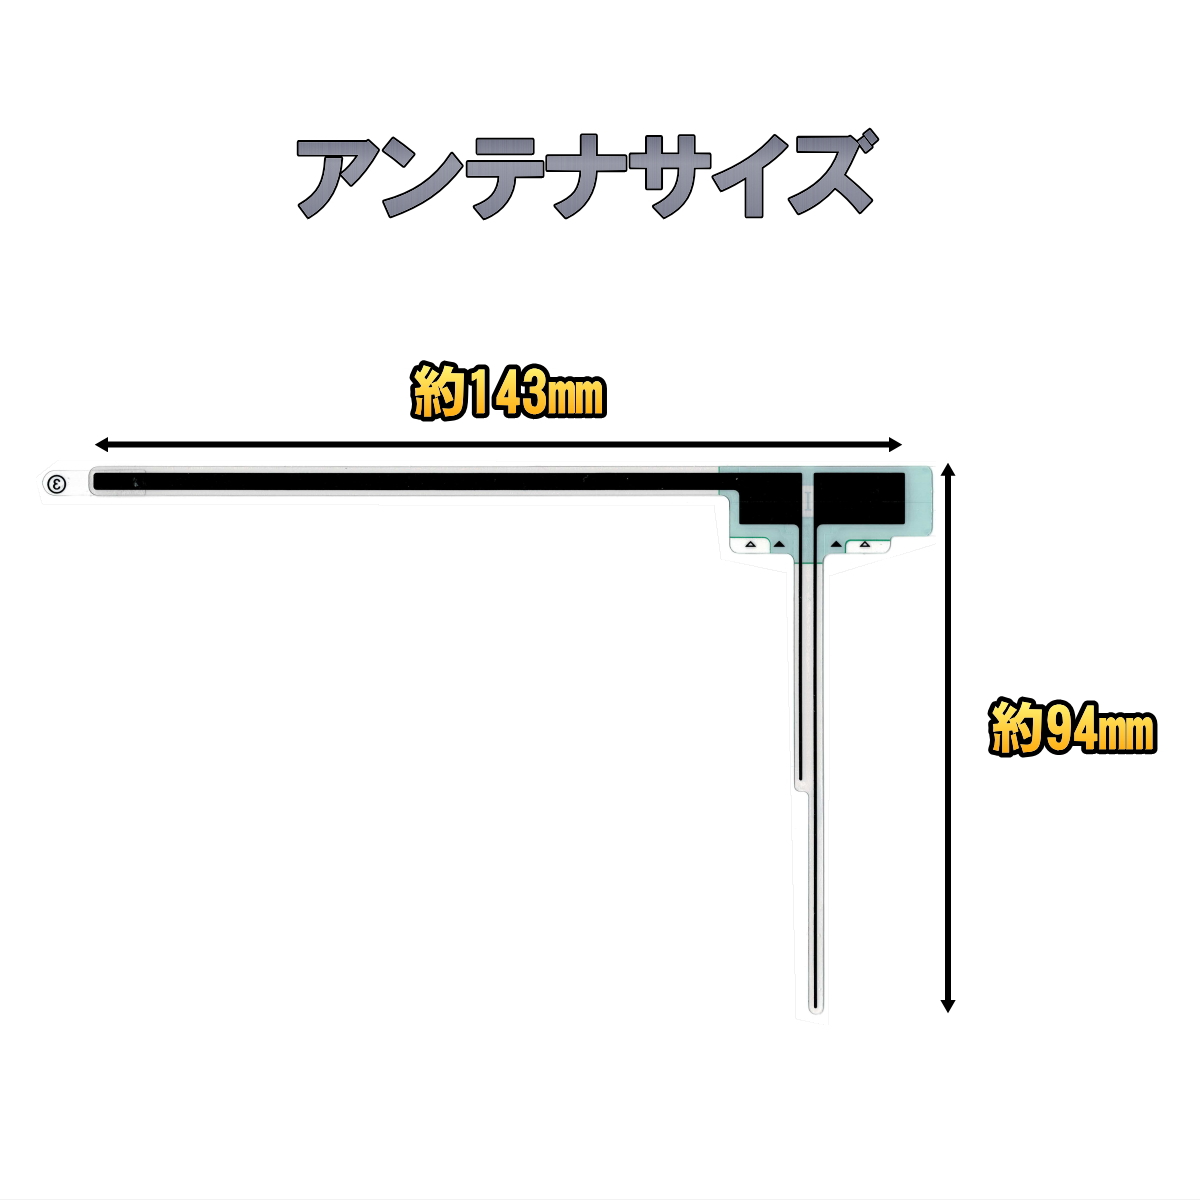 変換ケーブル、金具、取付キットの適合表 - Jifu place